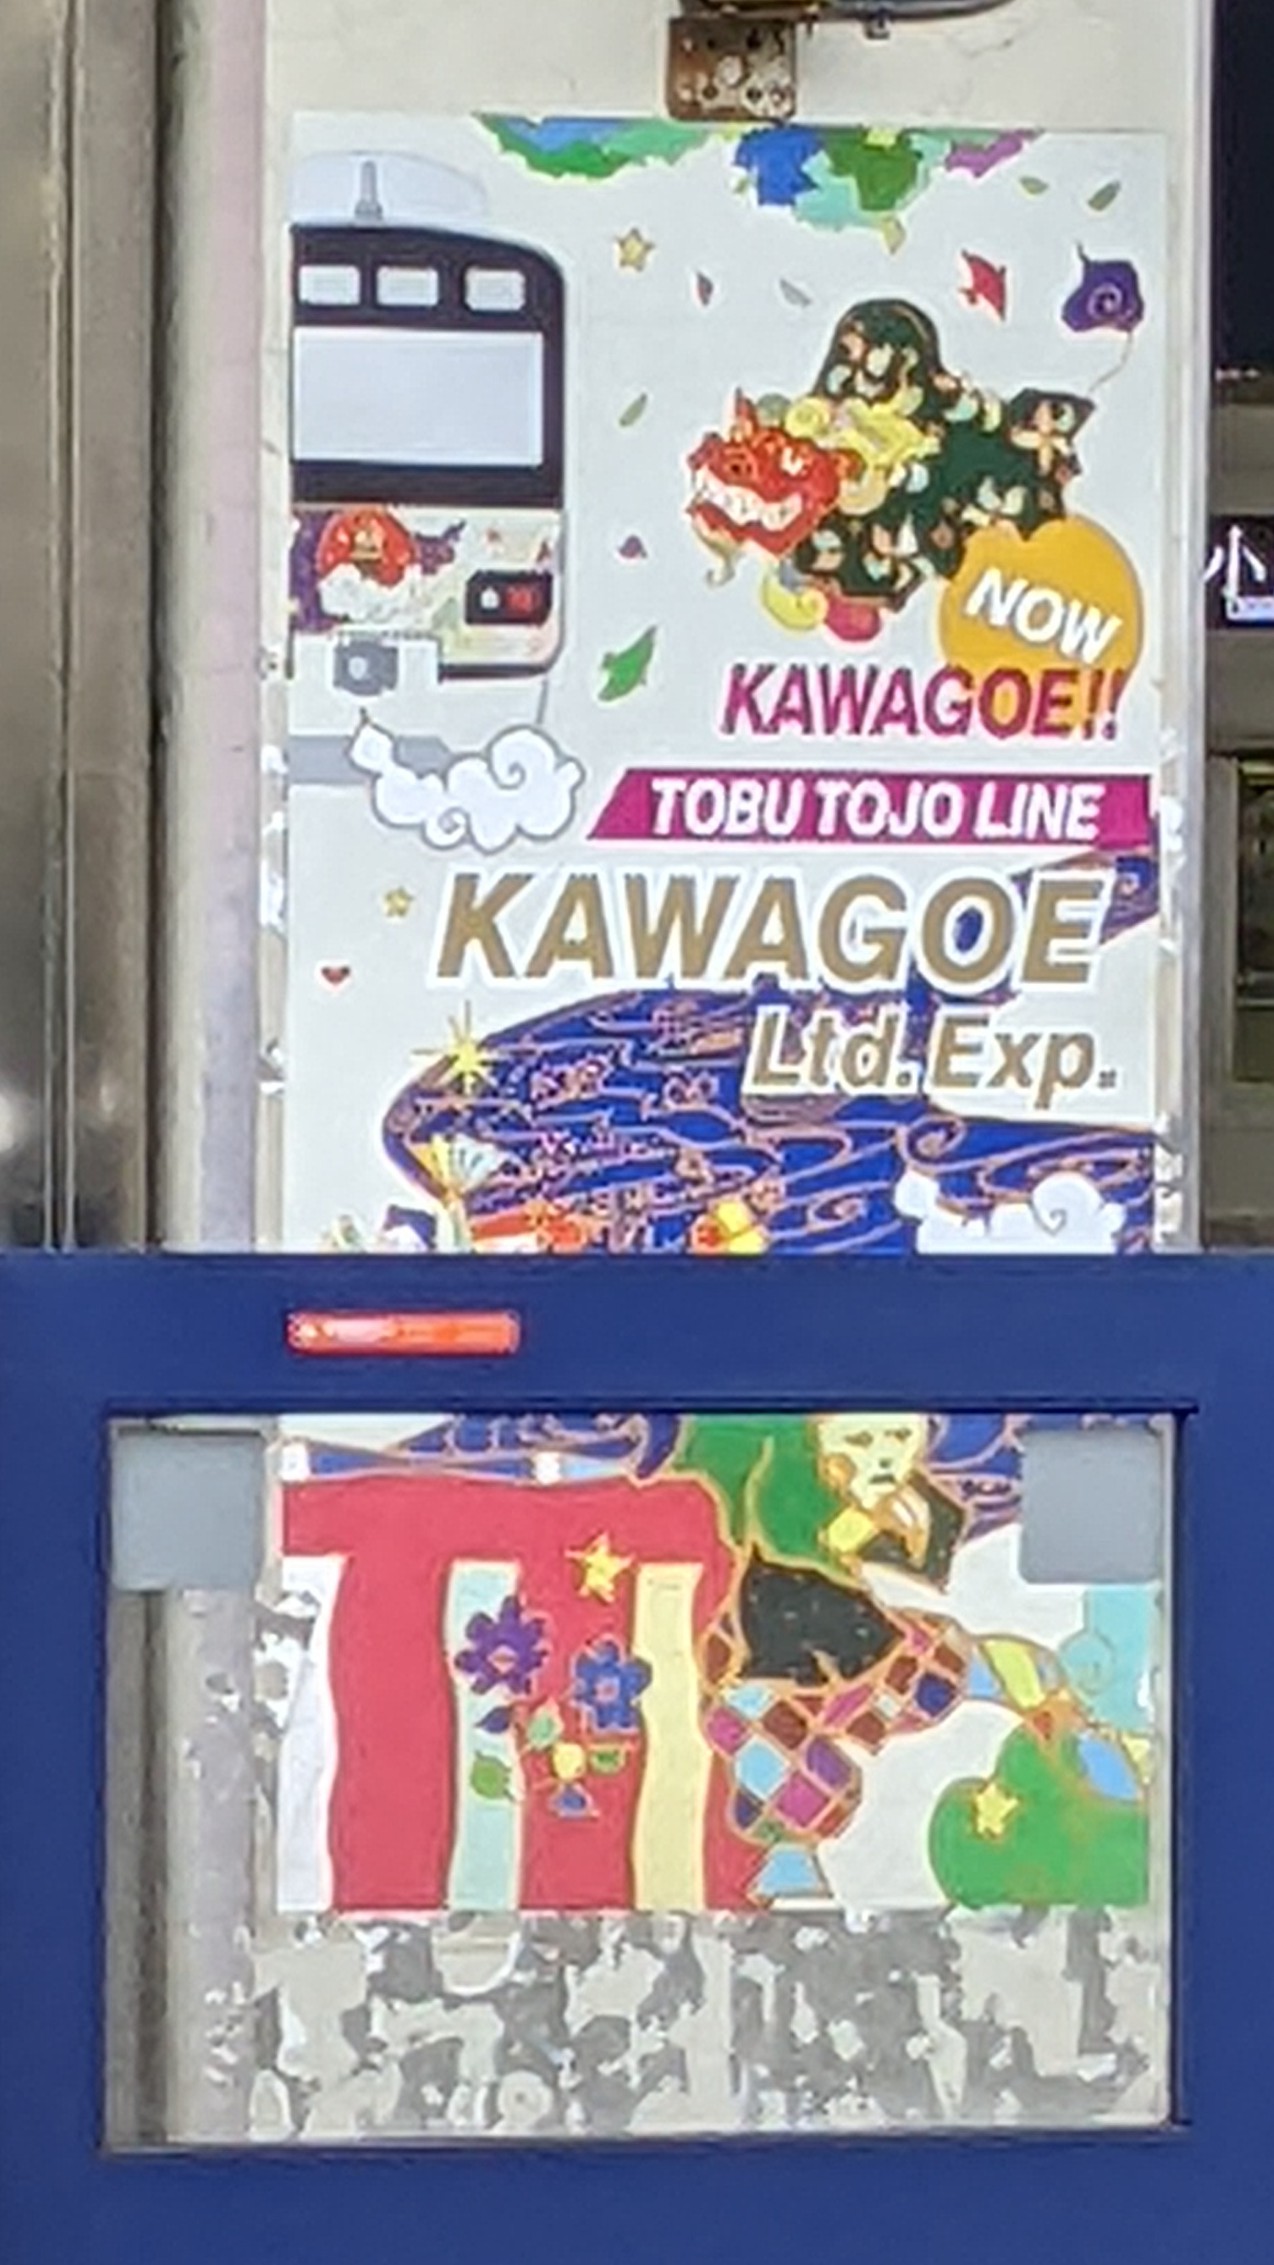 Kawagoe sign